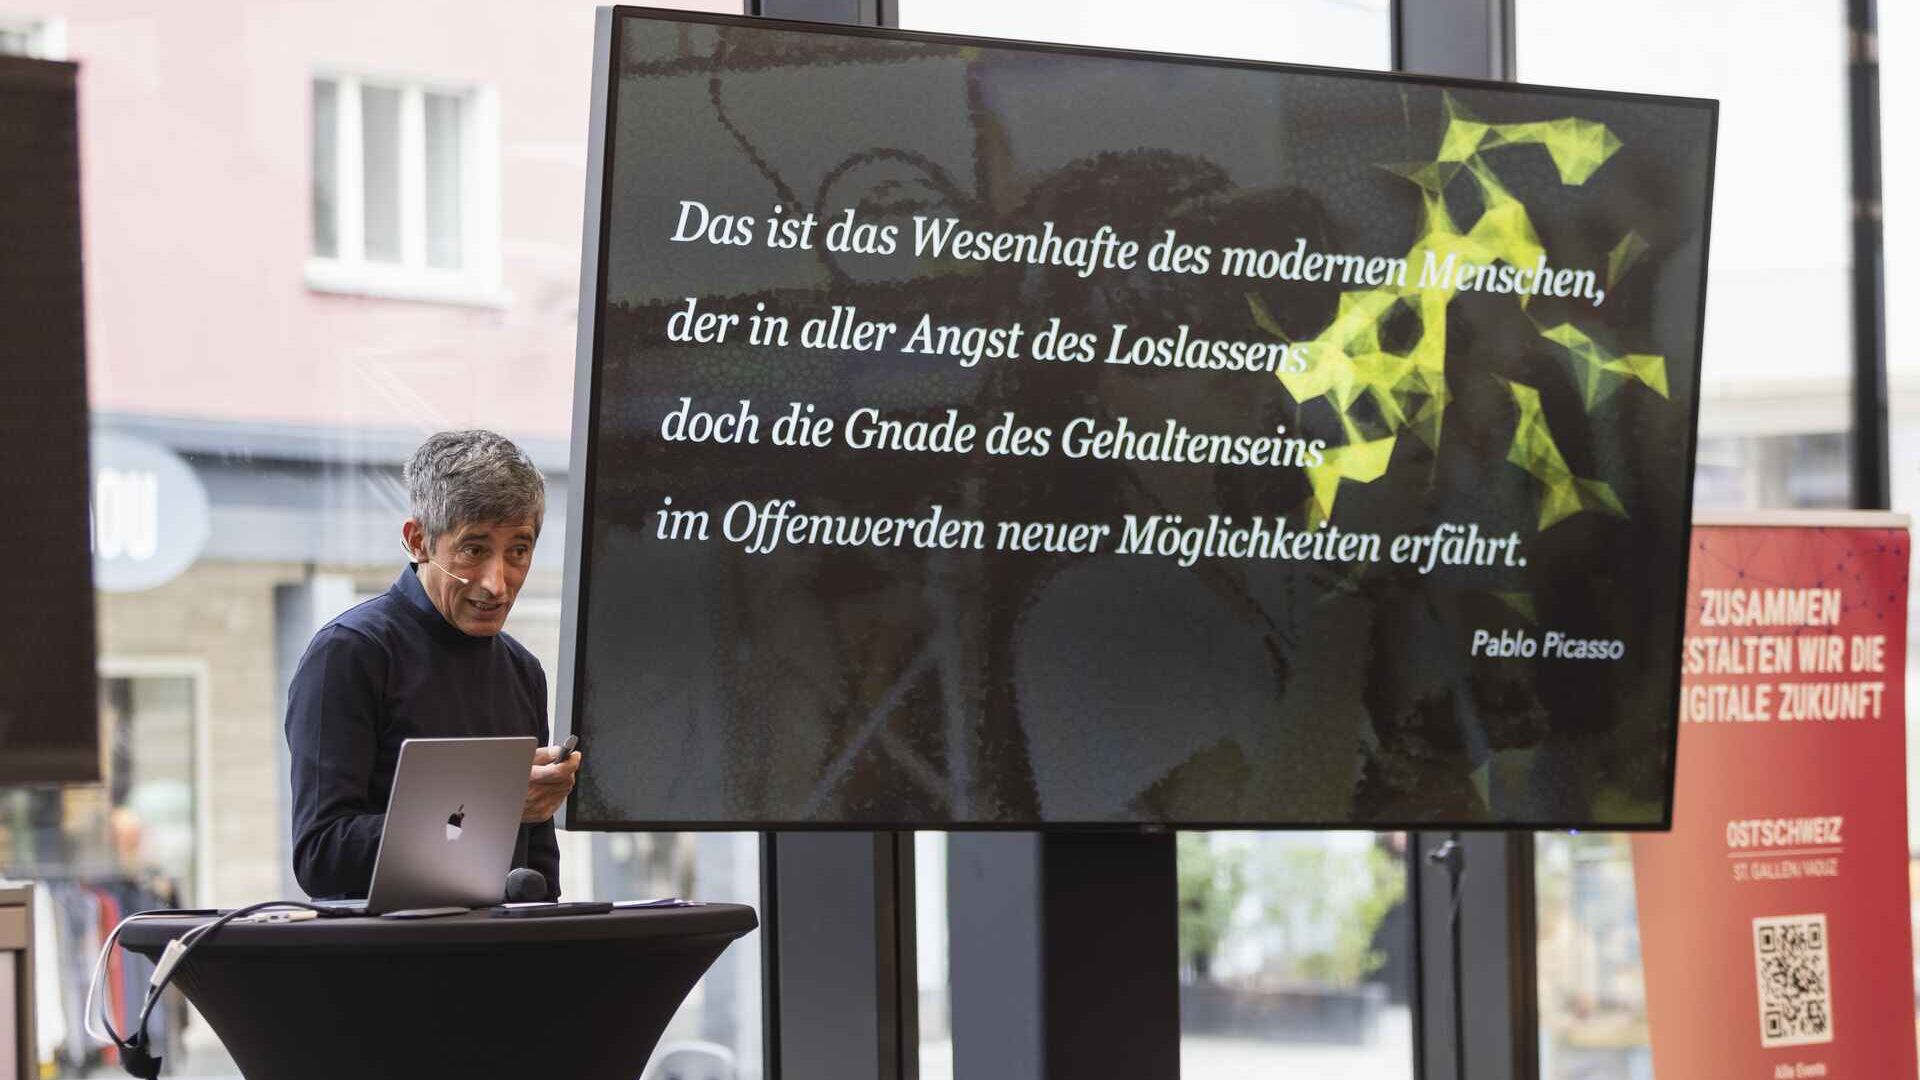 „Digitaltag Vaduz“ беше пречекан од Kunstmuseum на главниот град на Кнежеството Лихтенштајн во сабота, 15 октомври 2022 година